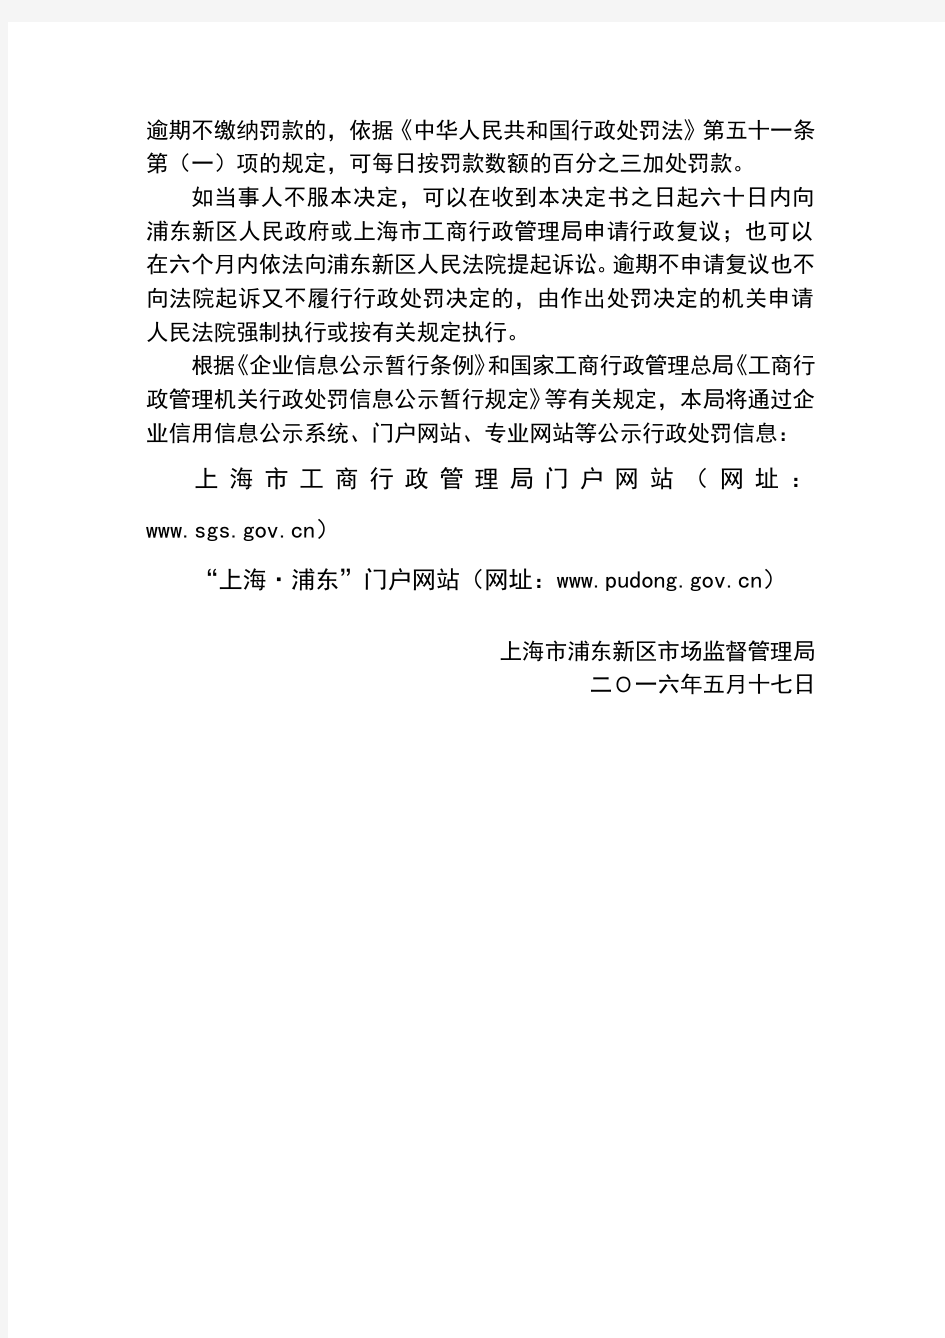 上海浦东新区场监督管理局行政处罚决定书